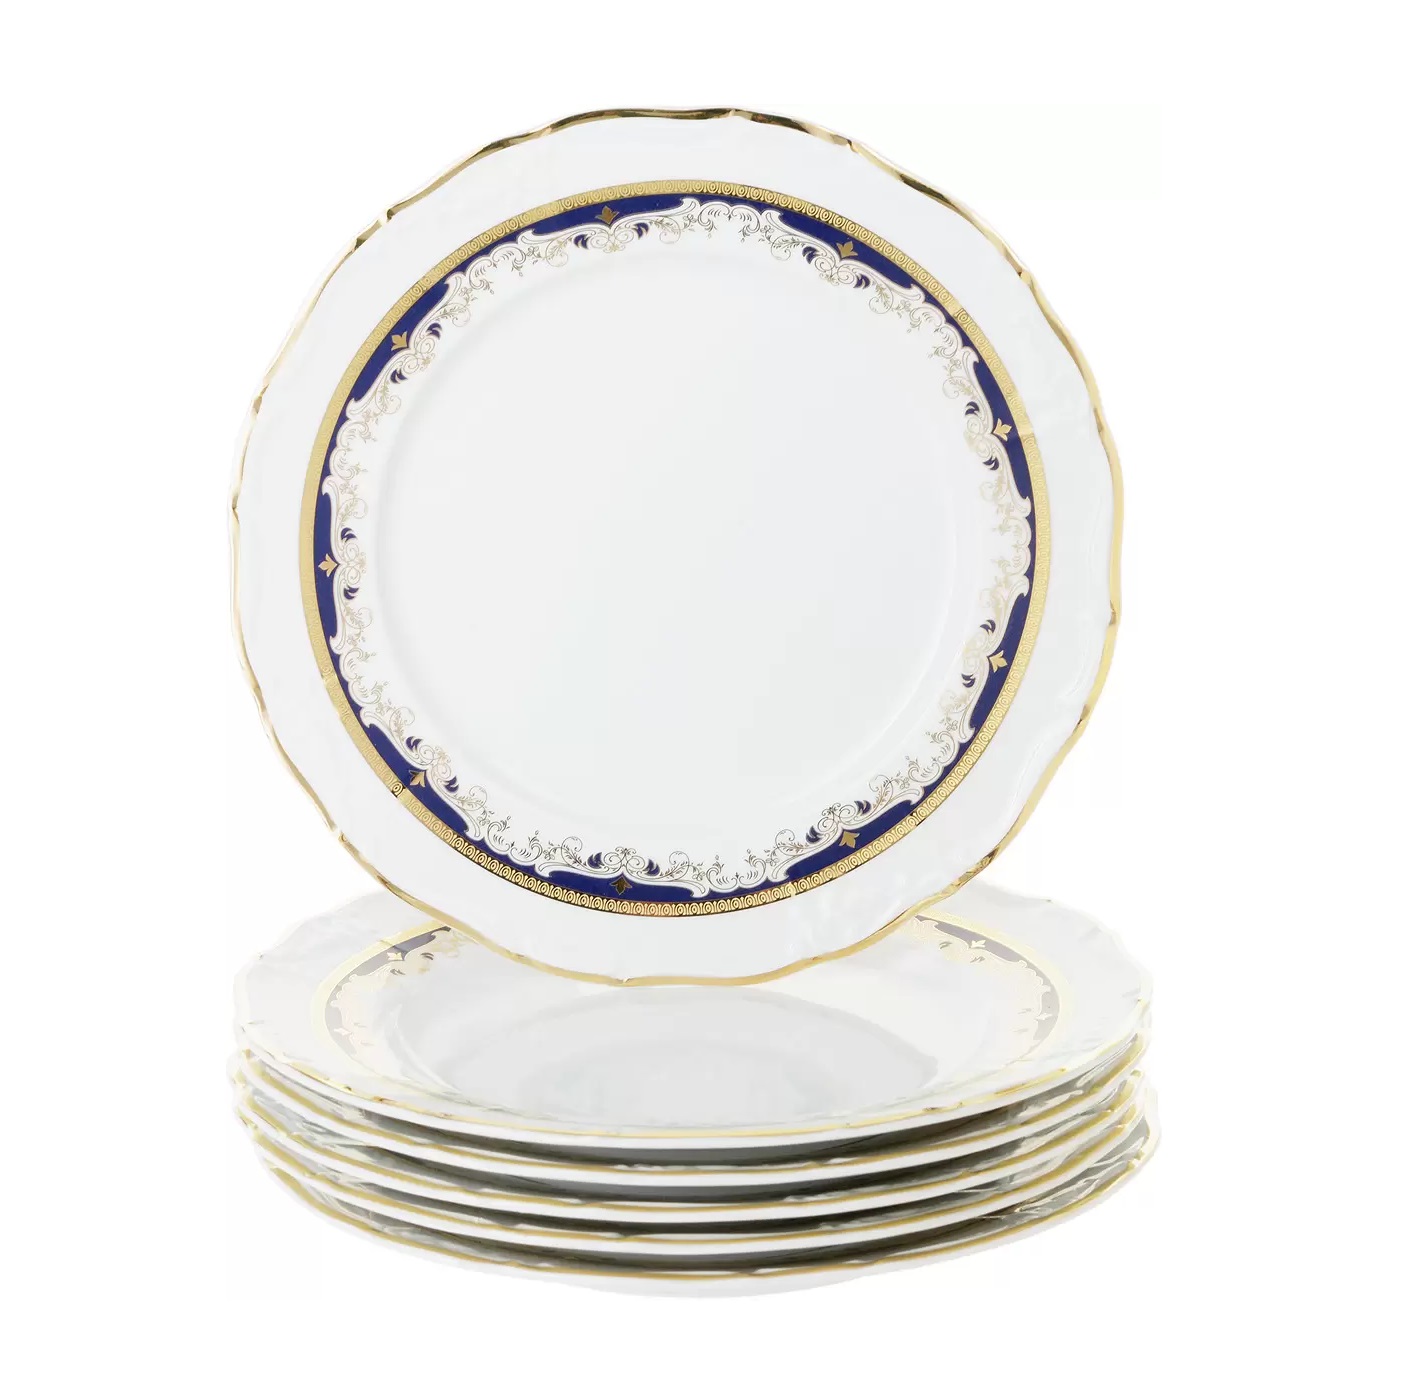 Набор тарелок мелких Thun Мария Луиза синий декор 25 см 6 шт. набор тарелок мелких thun мария луиза 25 см красный декор